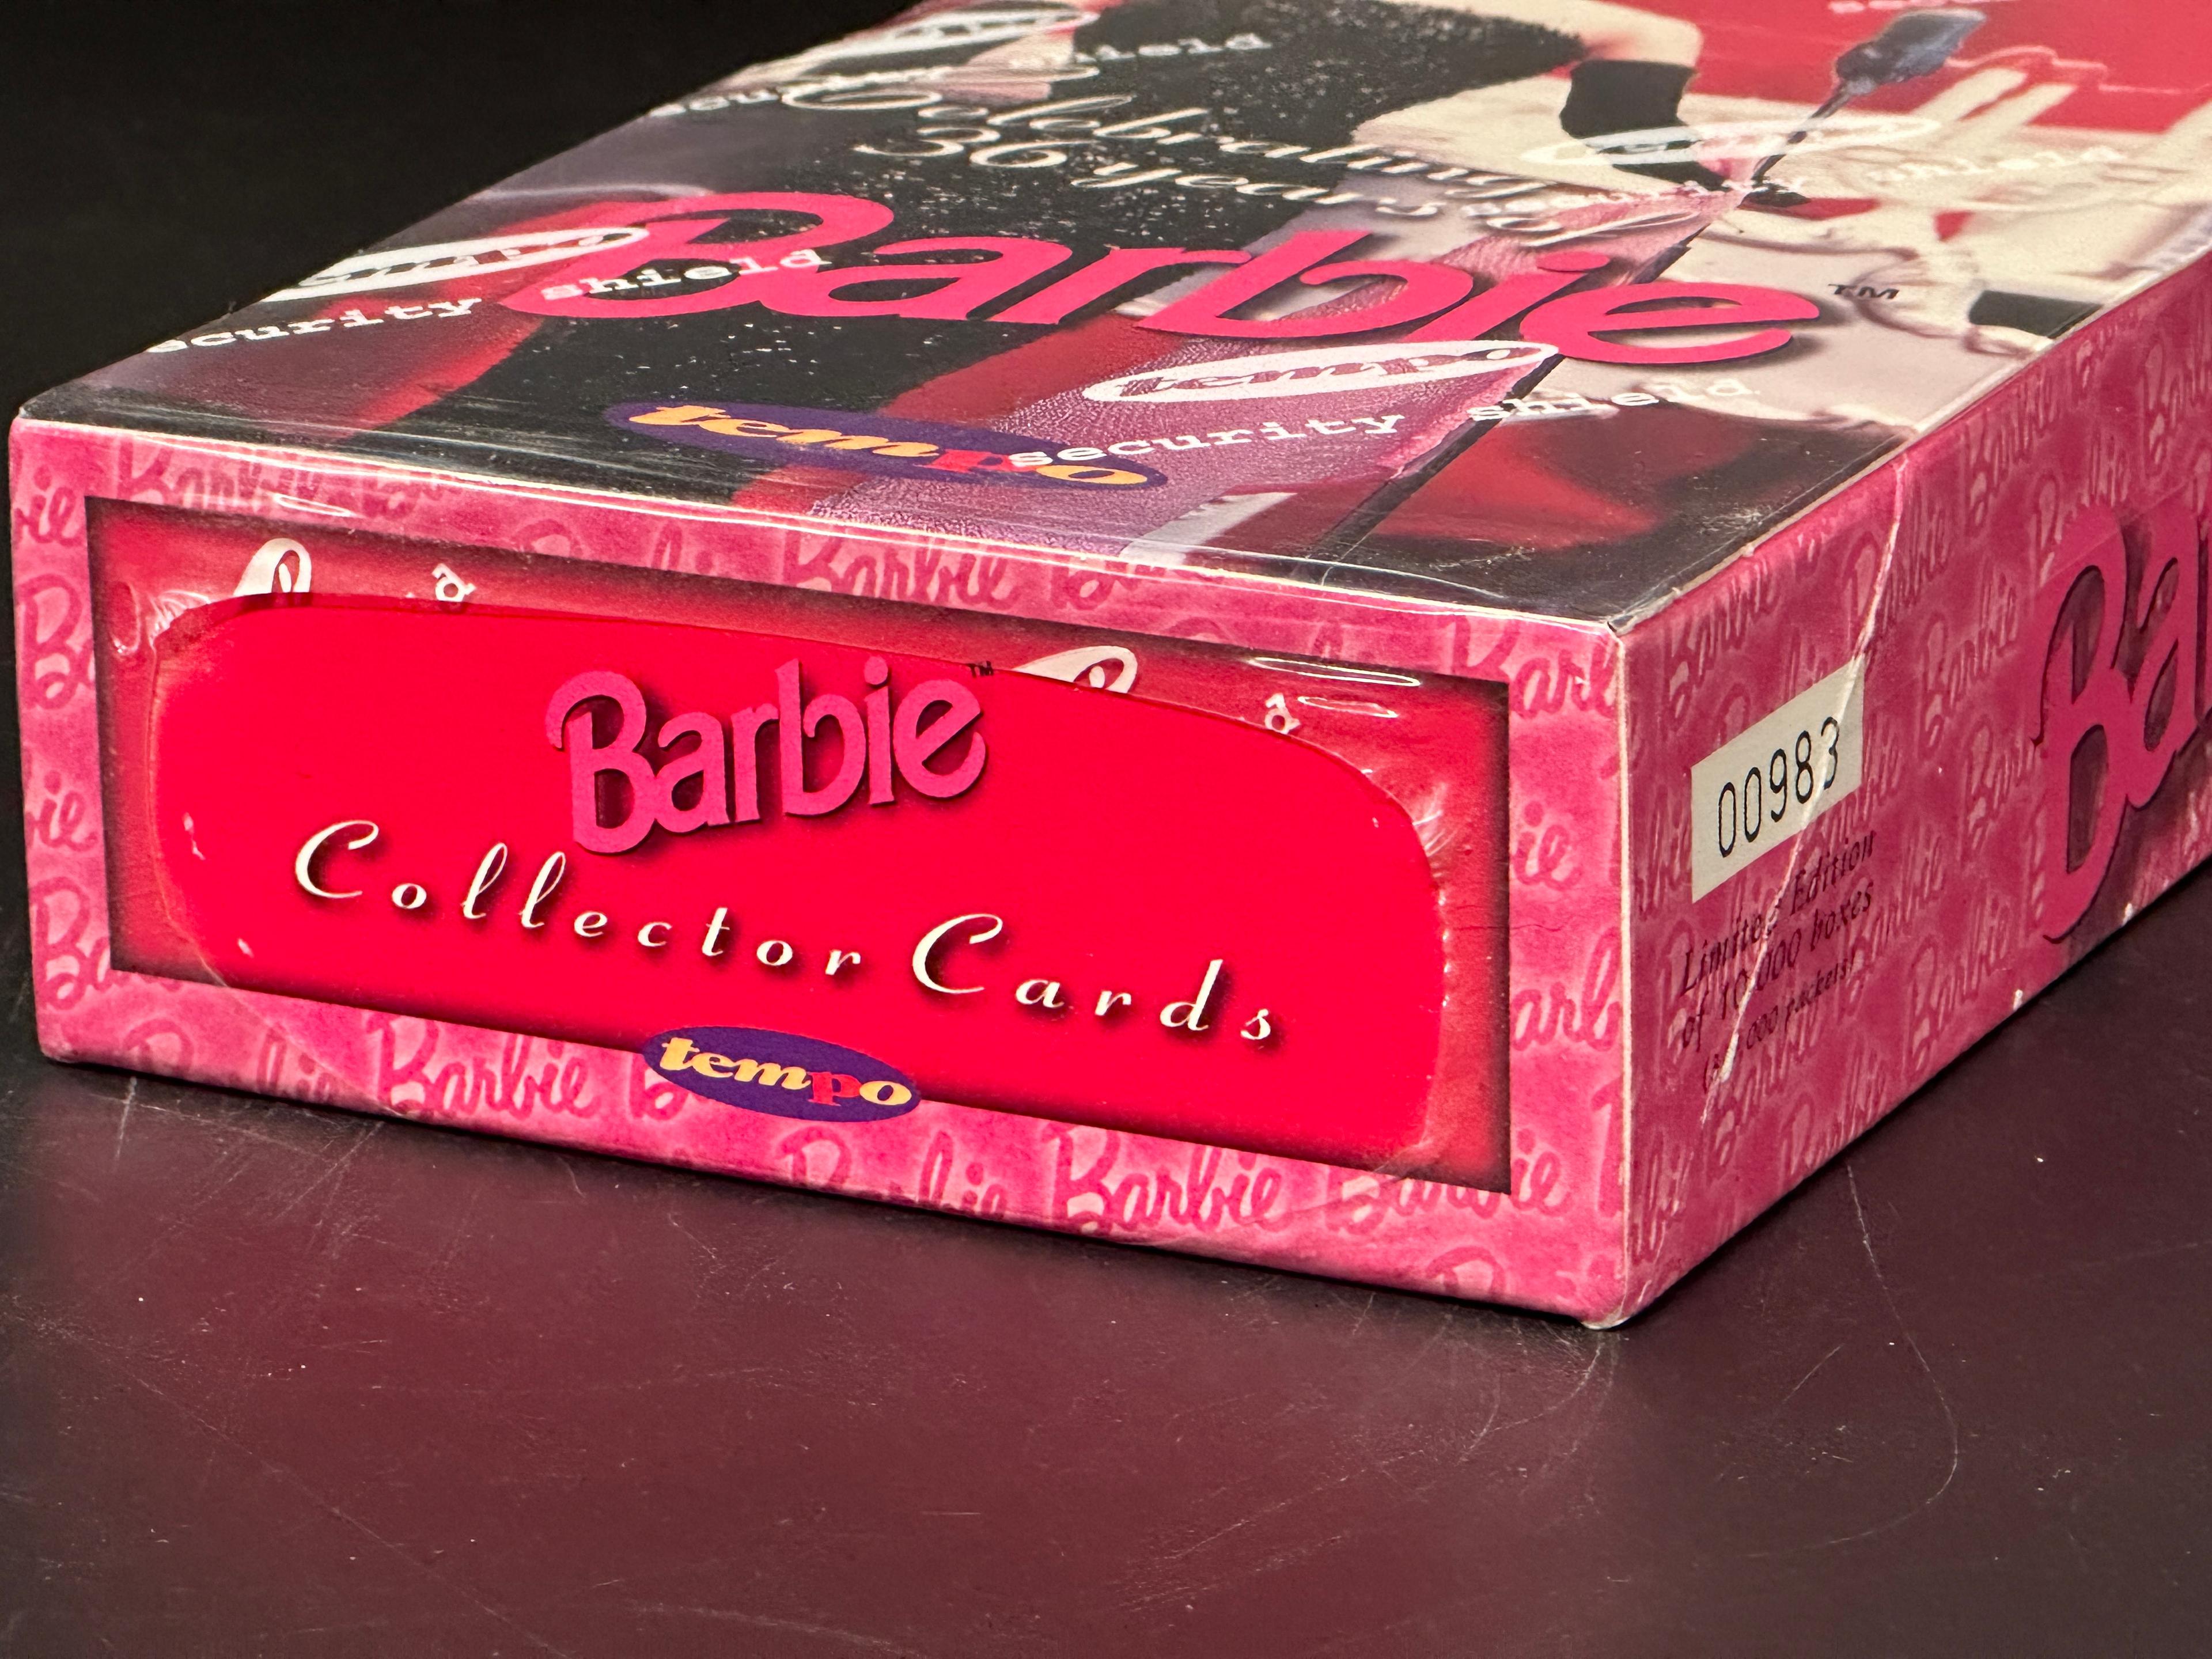 Vintage Ken & Barbie Collector's Cards